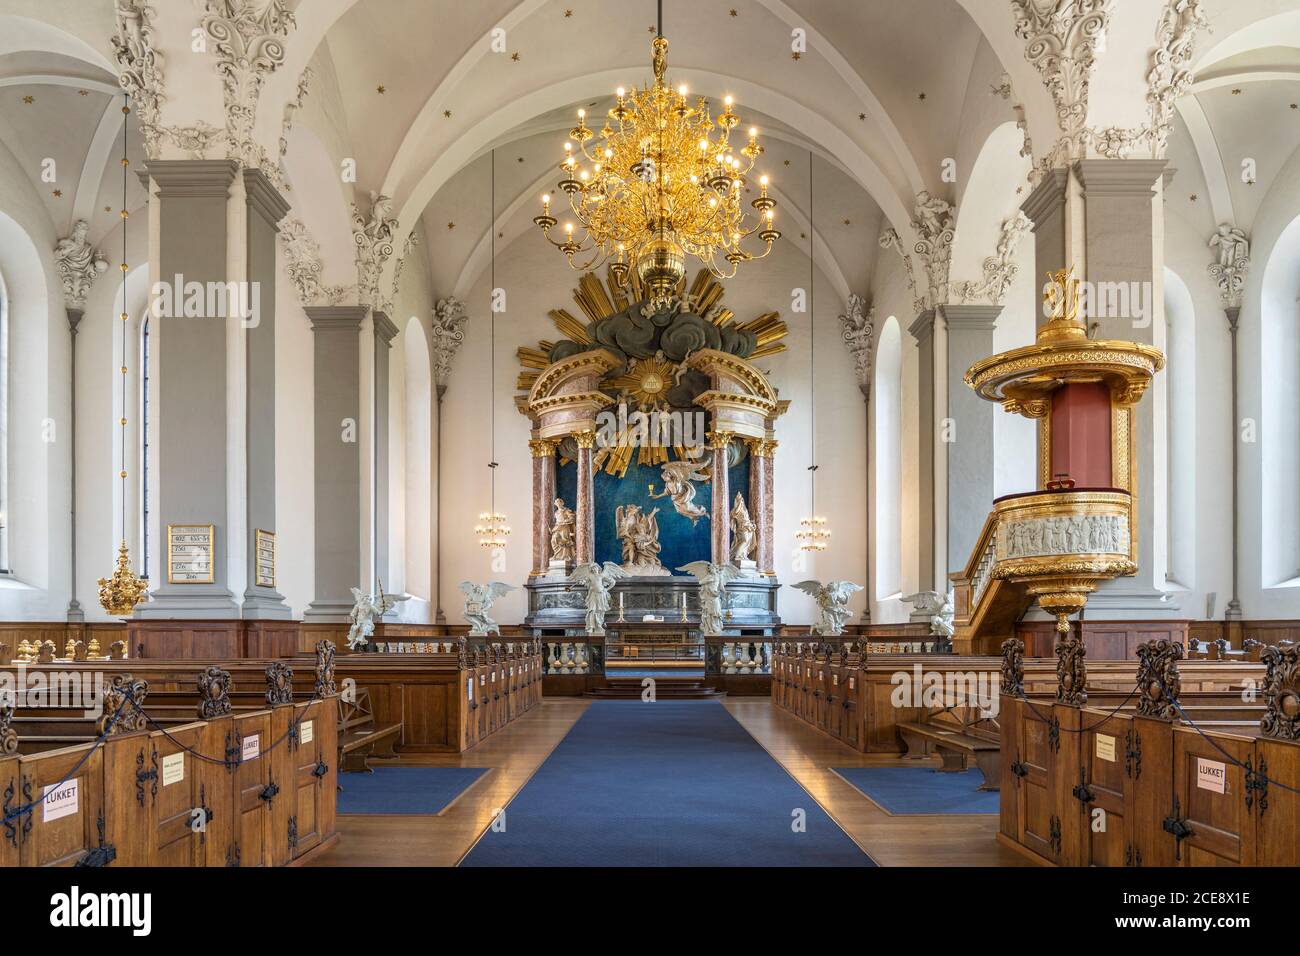 Innenraum der evangelisch-lutherischen Erlöserkirche  Vor Frelsers Kirke, Kopenhagen, Dänemark, Europa |  Church of Our Saviour  Vor Frelsers Kirke in Stock Photo